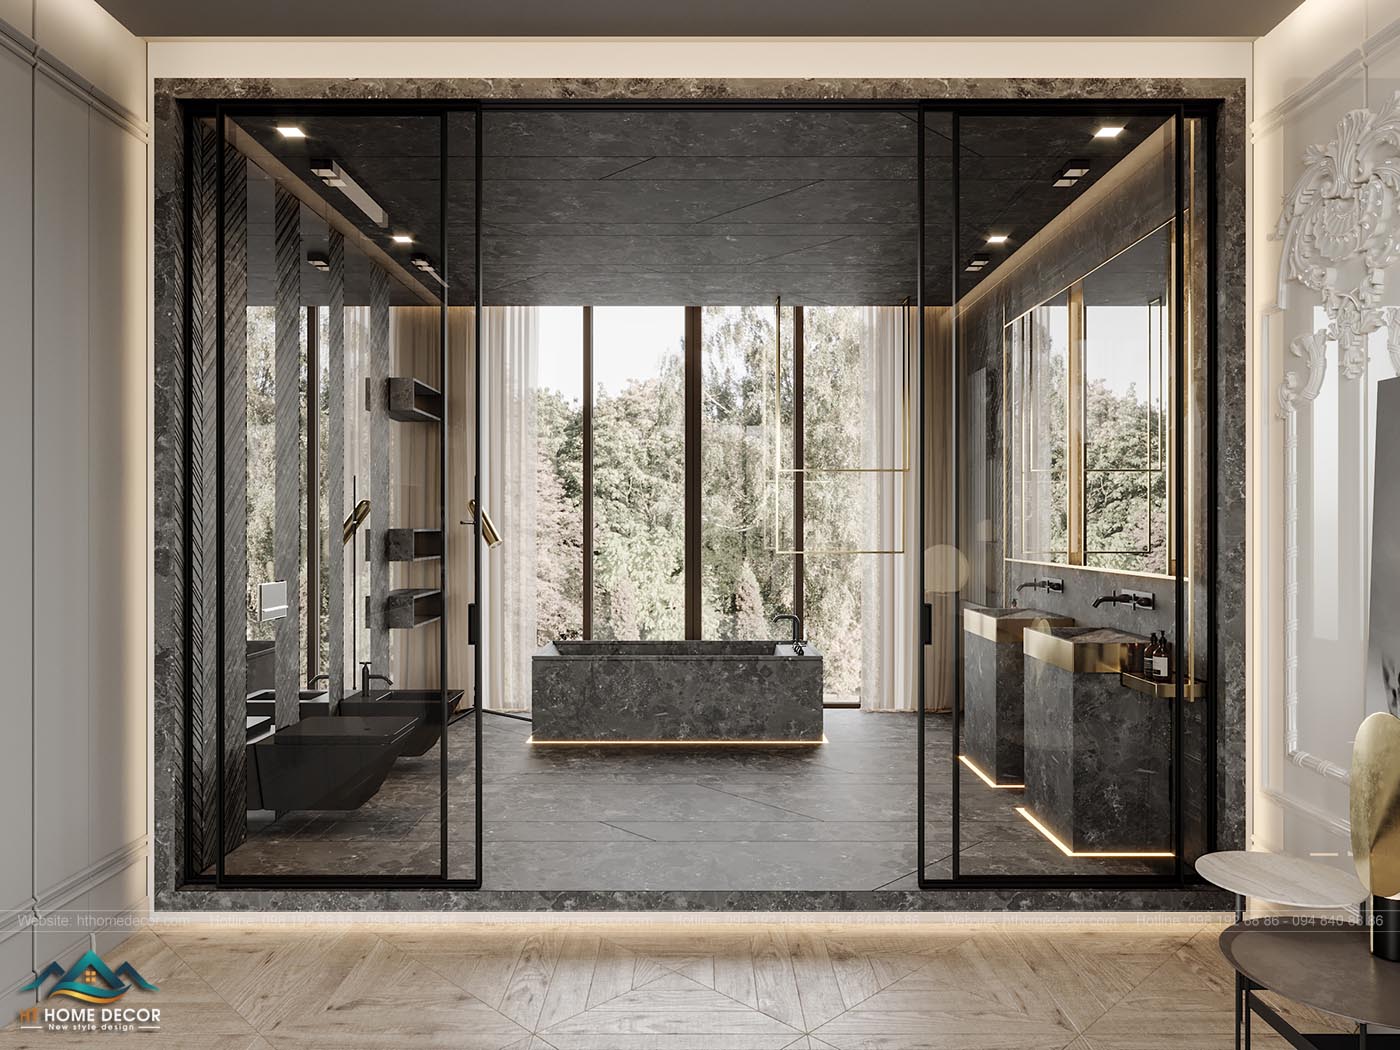 Màu ghi xám vân đá được chọn làm màu nền của phòng tắm, cửa kính trong ngắm nhìn được cây cối bên ngoài. Đây chính là điểm nhấn về tầm nhìn đẹp trong thiết kế nội thất chung cư này. 